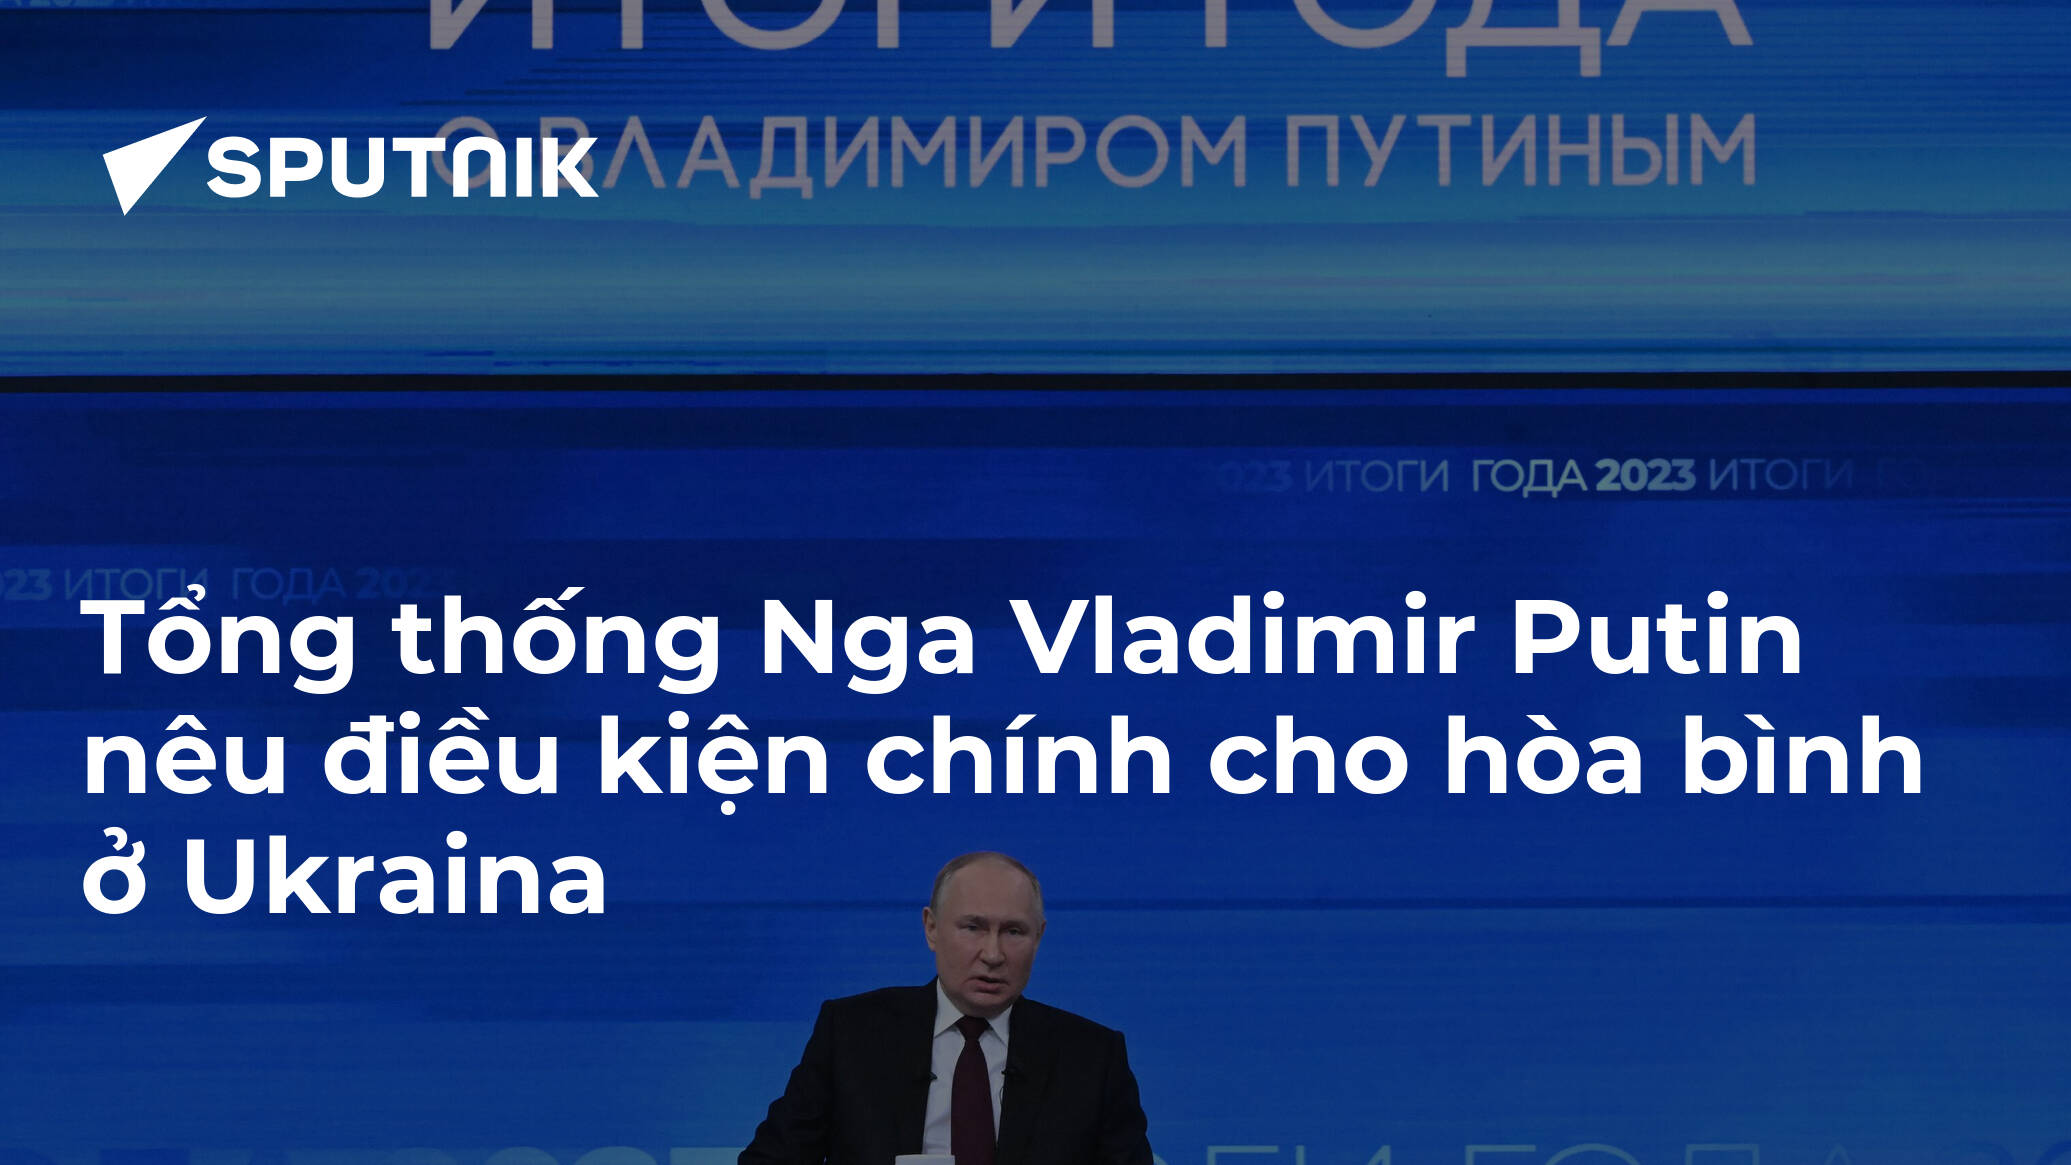 sputniknews.vn